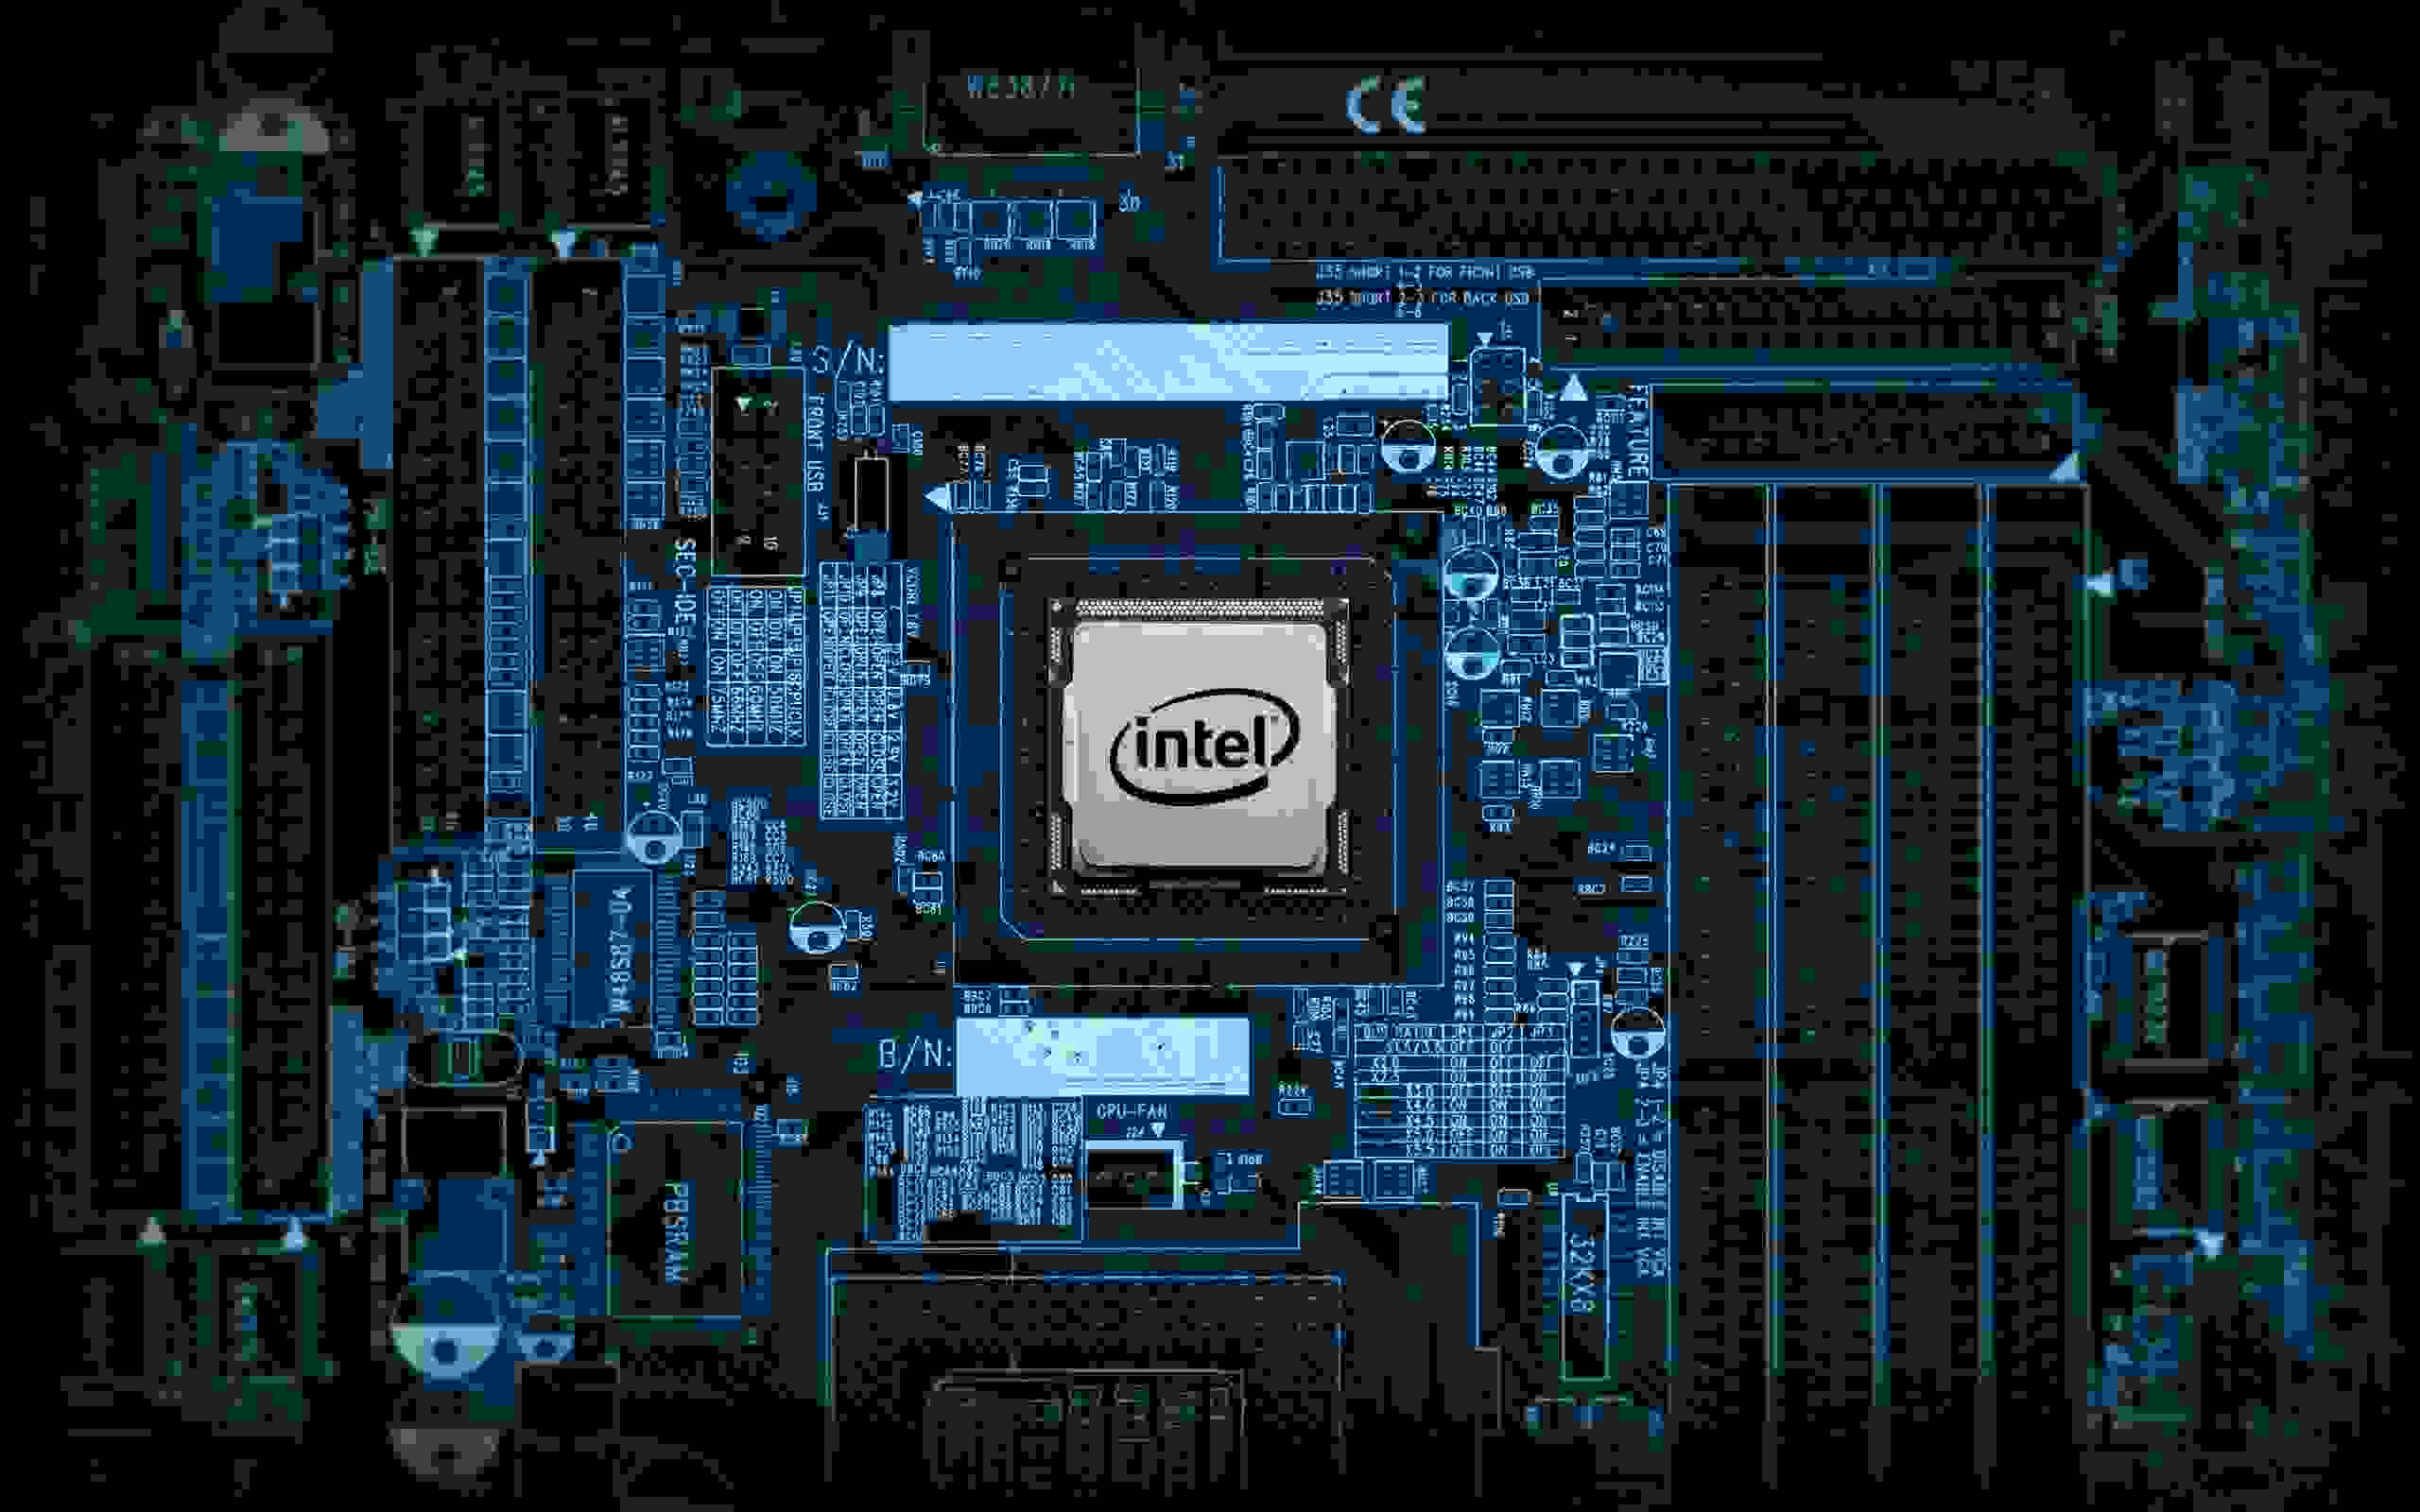 Проблемы Intel могут привести к исчезновению крупной технологической компании